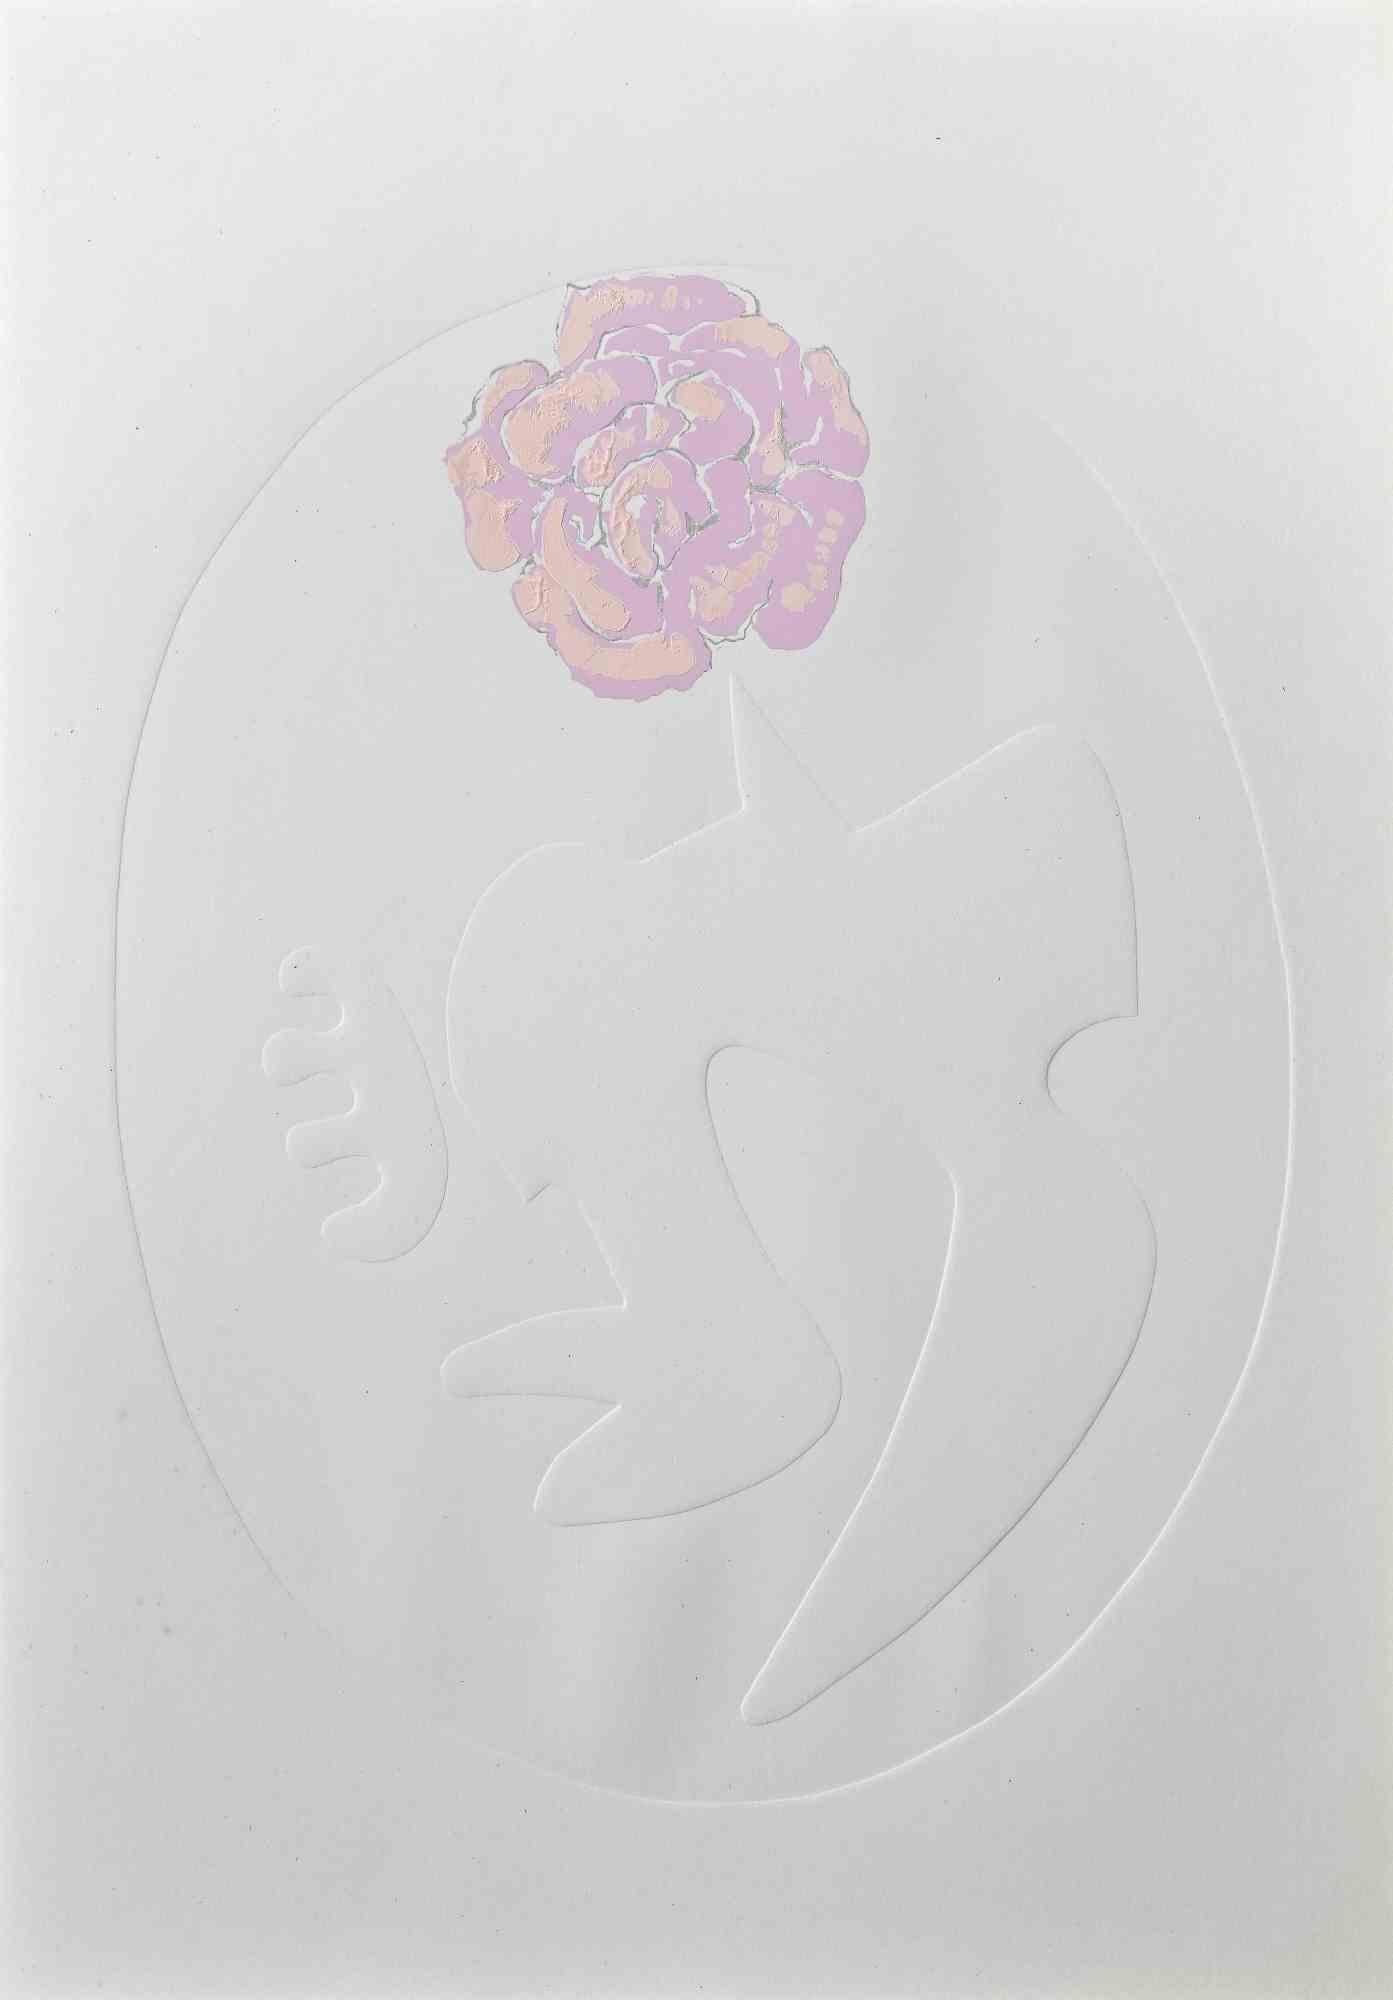 Pink Rose ist ein Siebdruck und eine Prägung von Leo Guida aus den 1971er Jahren.

Guter Zustand, proof artist.

Keine Unterschrift.

Als Künstler, der ein Gespür für aktuelle Themen, künstlerische Strömungen und historische Techniken hat, konnte